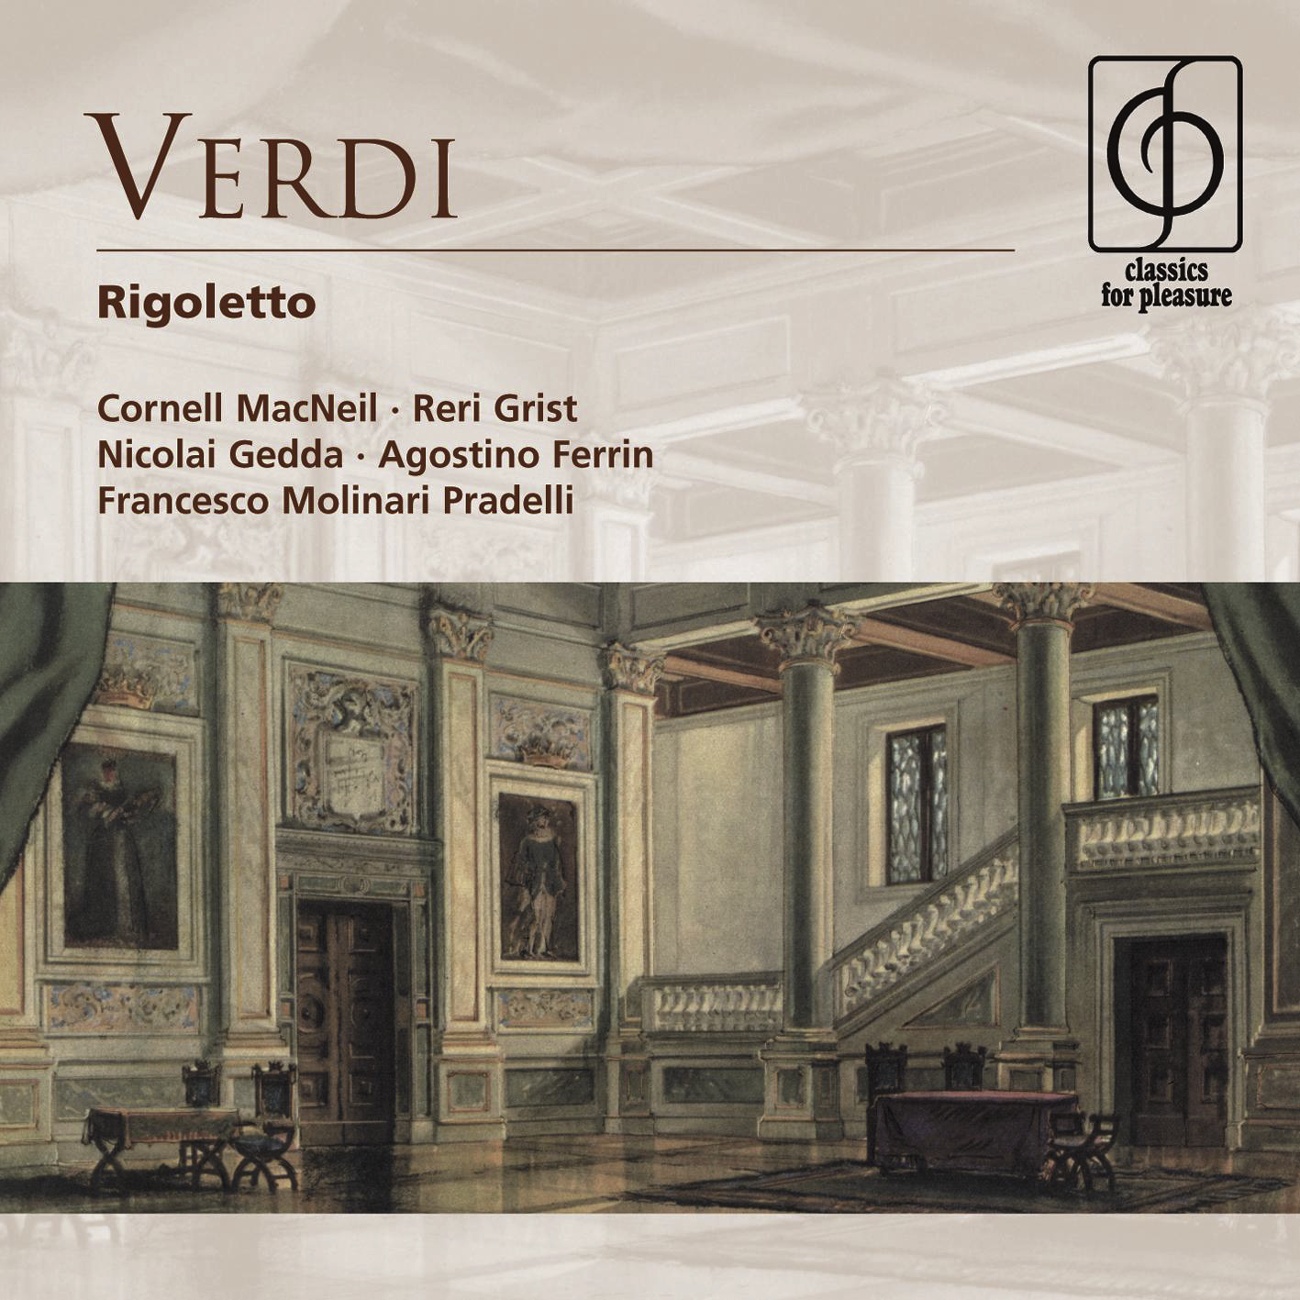 Rigoletto [Acts II & III]: Cortigiani, vil razza dannata (Rigoletto)